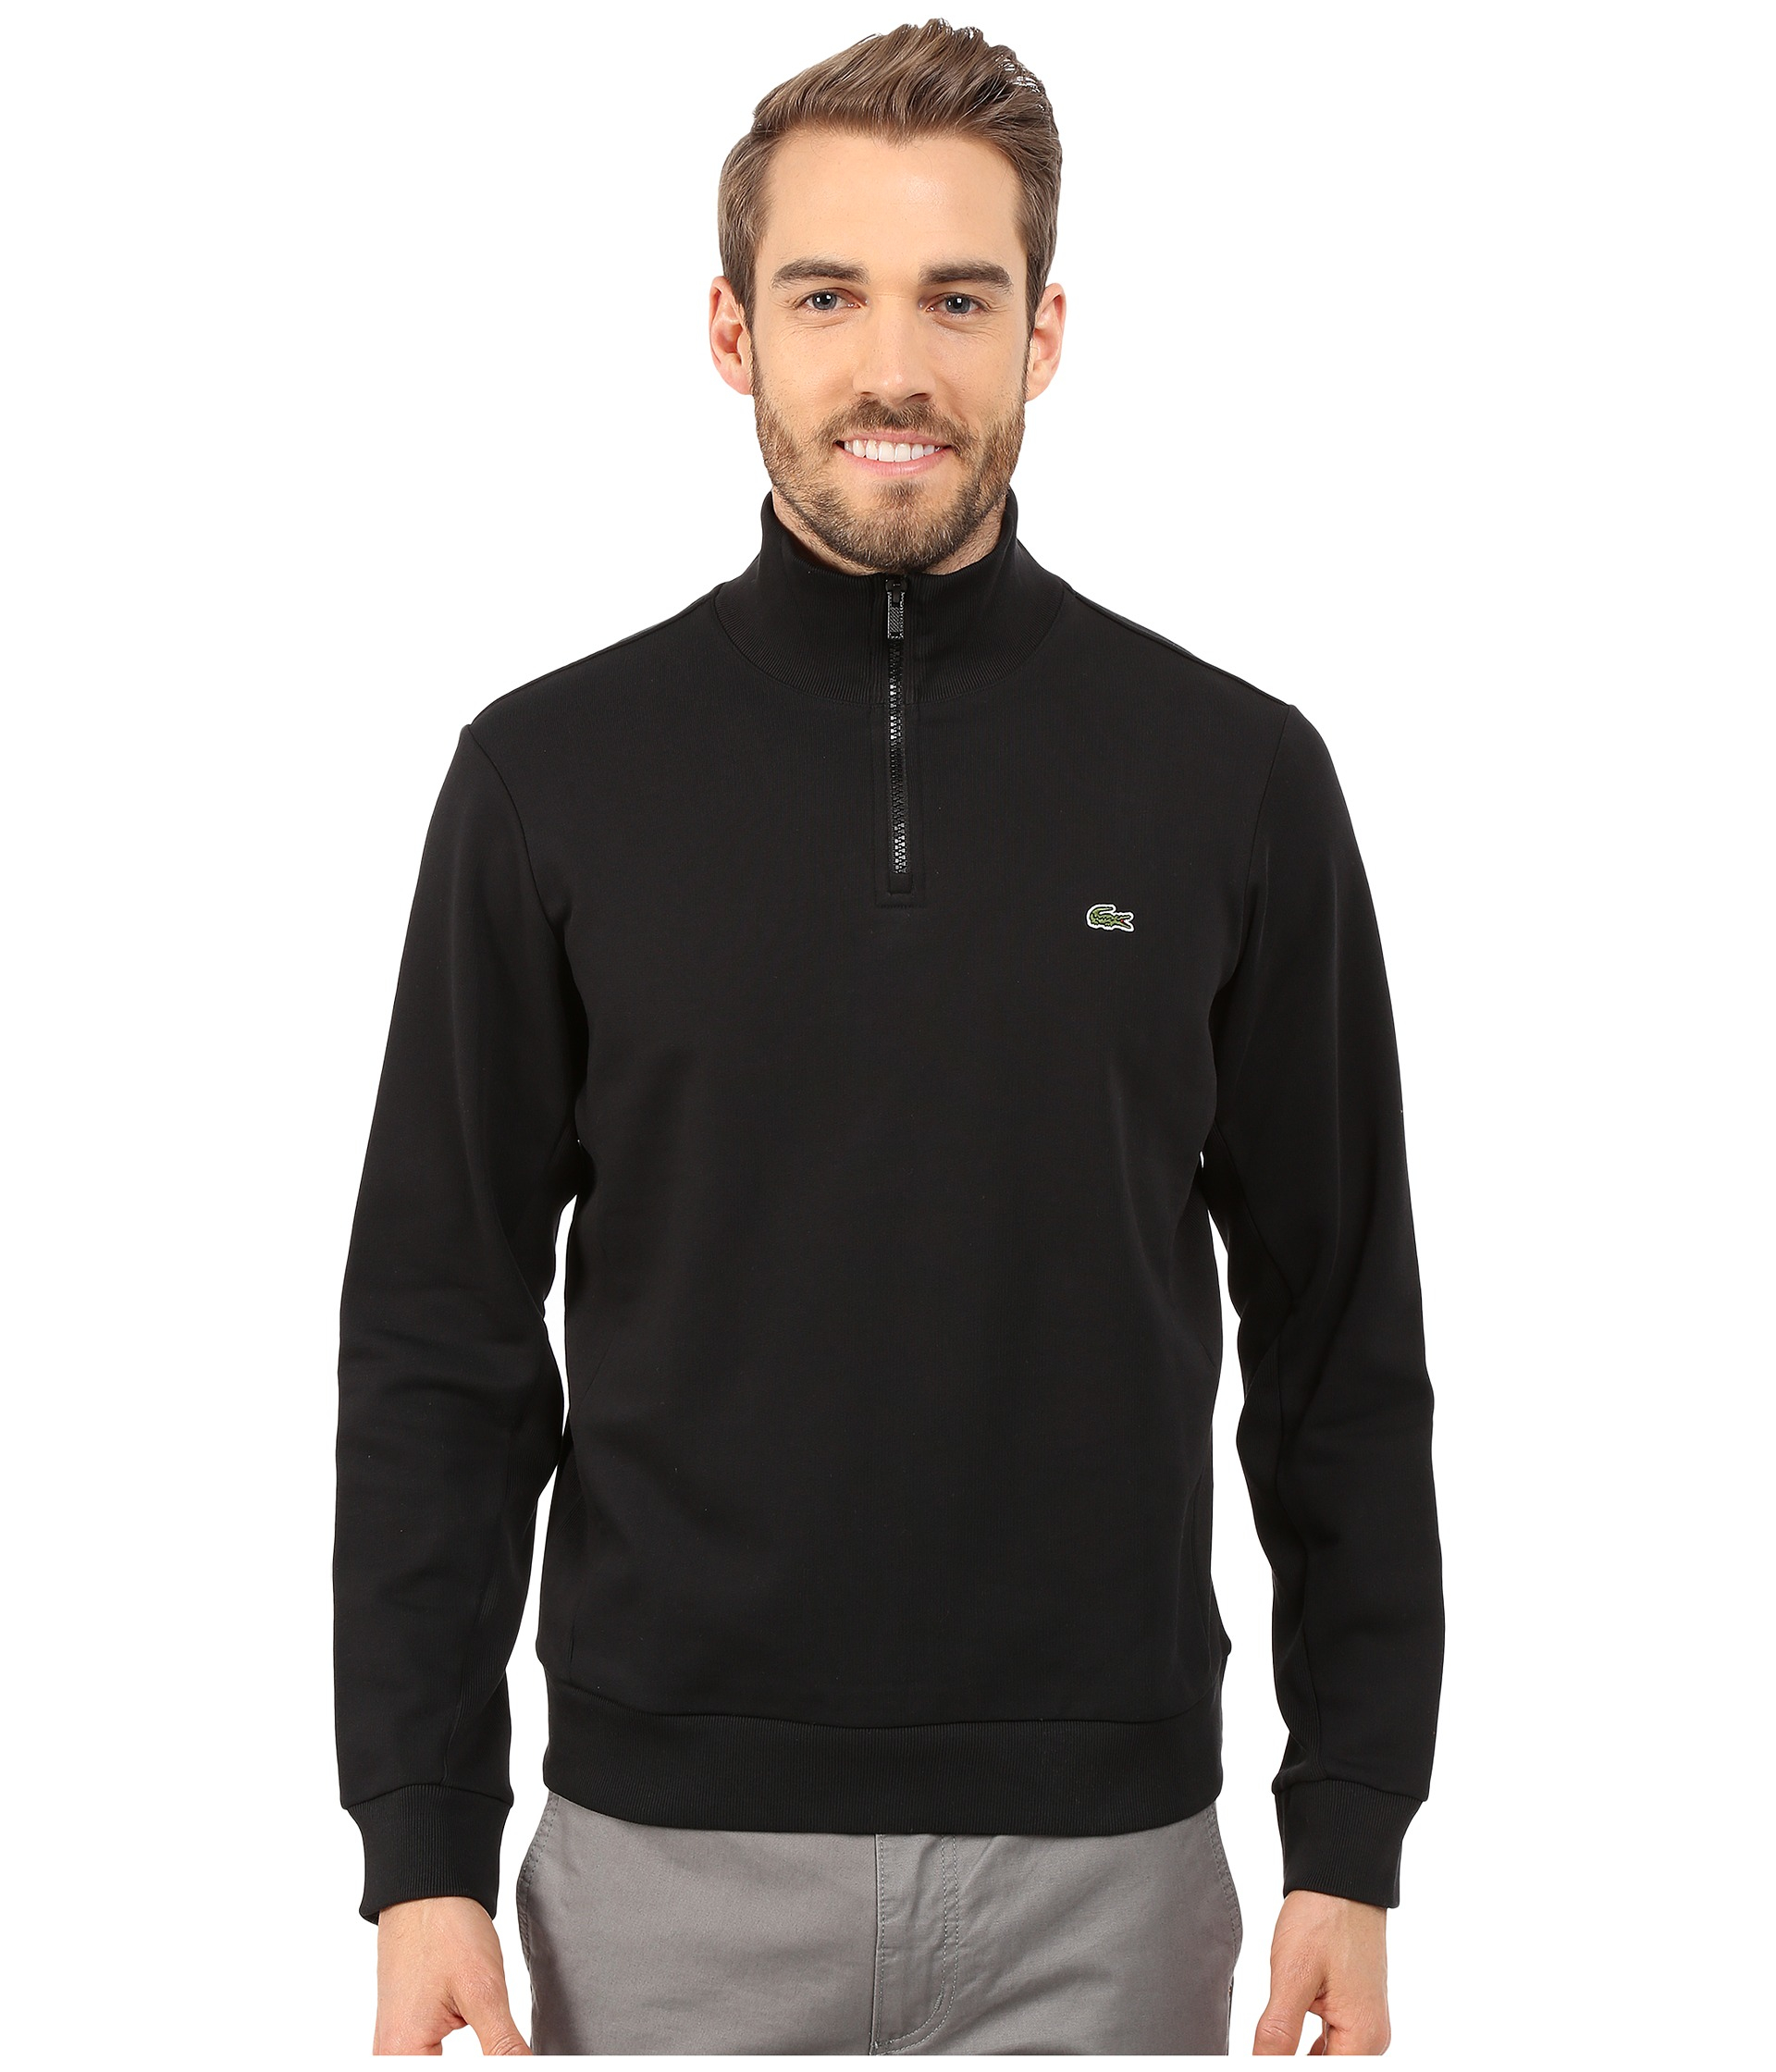 Lacoste Light Weight Fleece 1/4 Zip Sweatshirt in Black for Men - Lyst